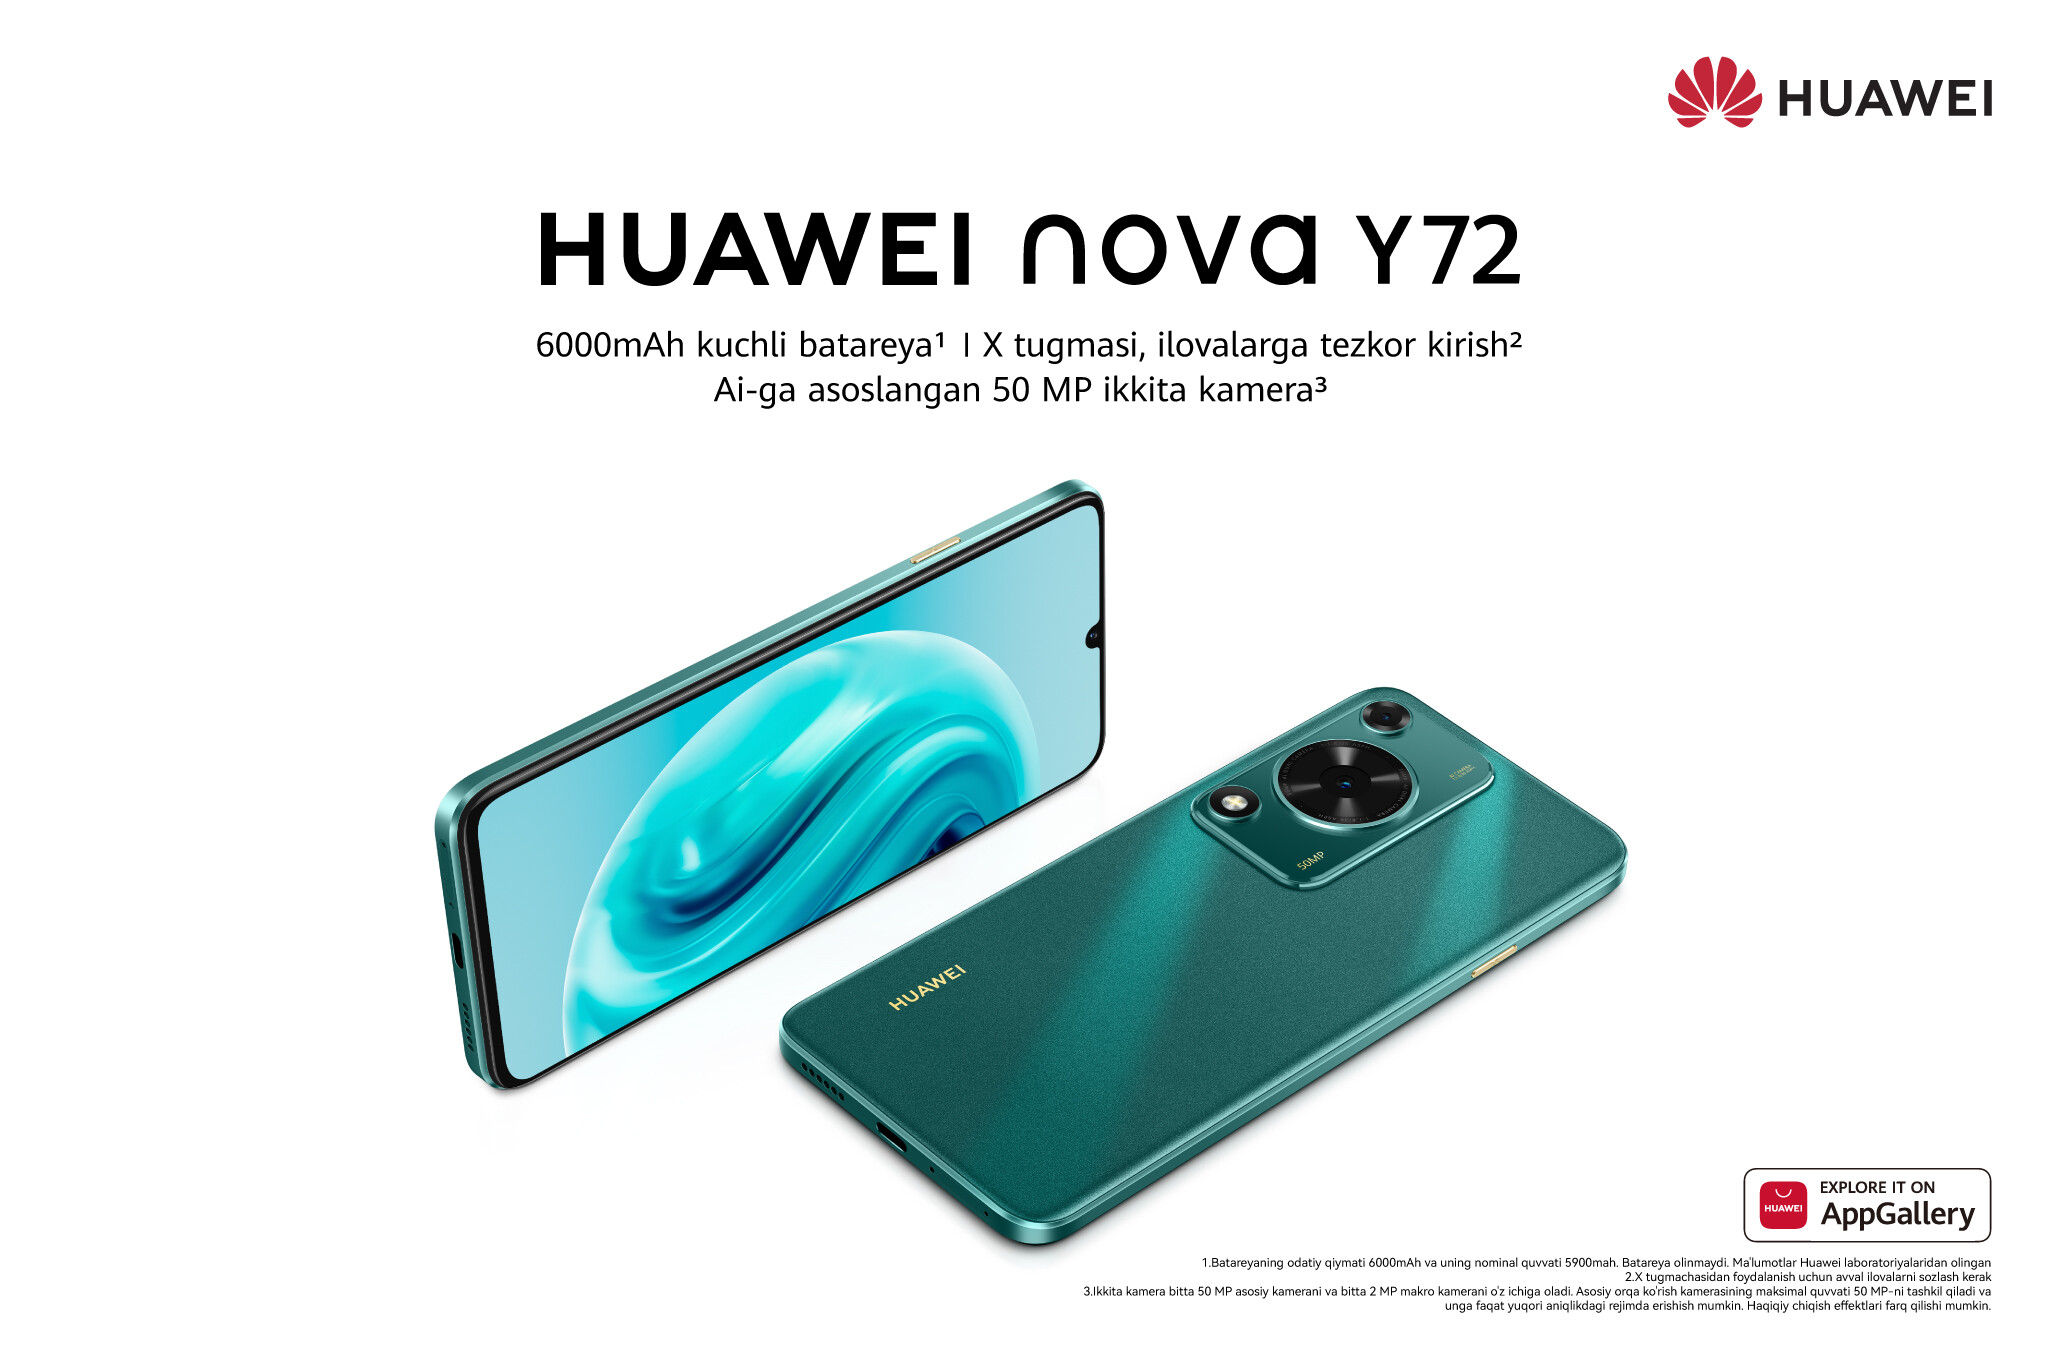 HUAWEI анонсировала новую модель в линейке nova серии — HUAWEI nova Y72